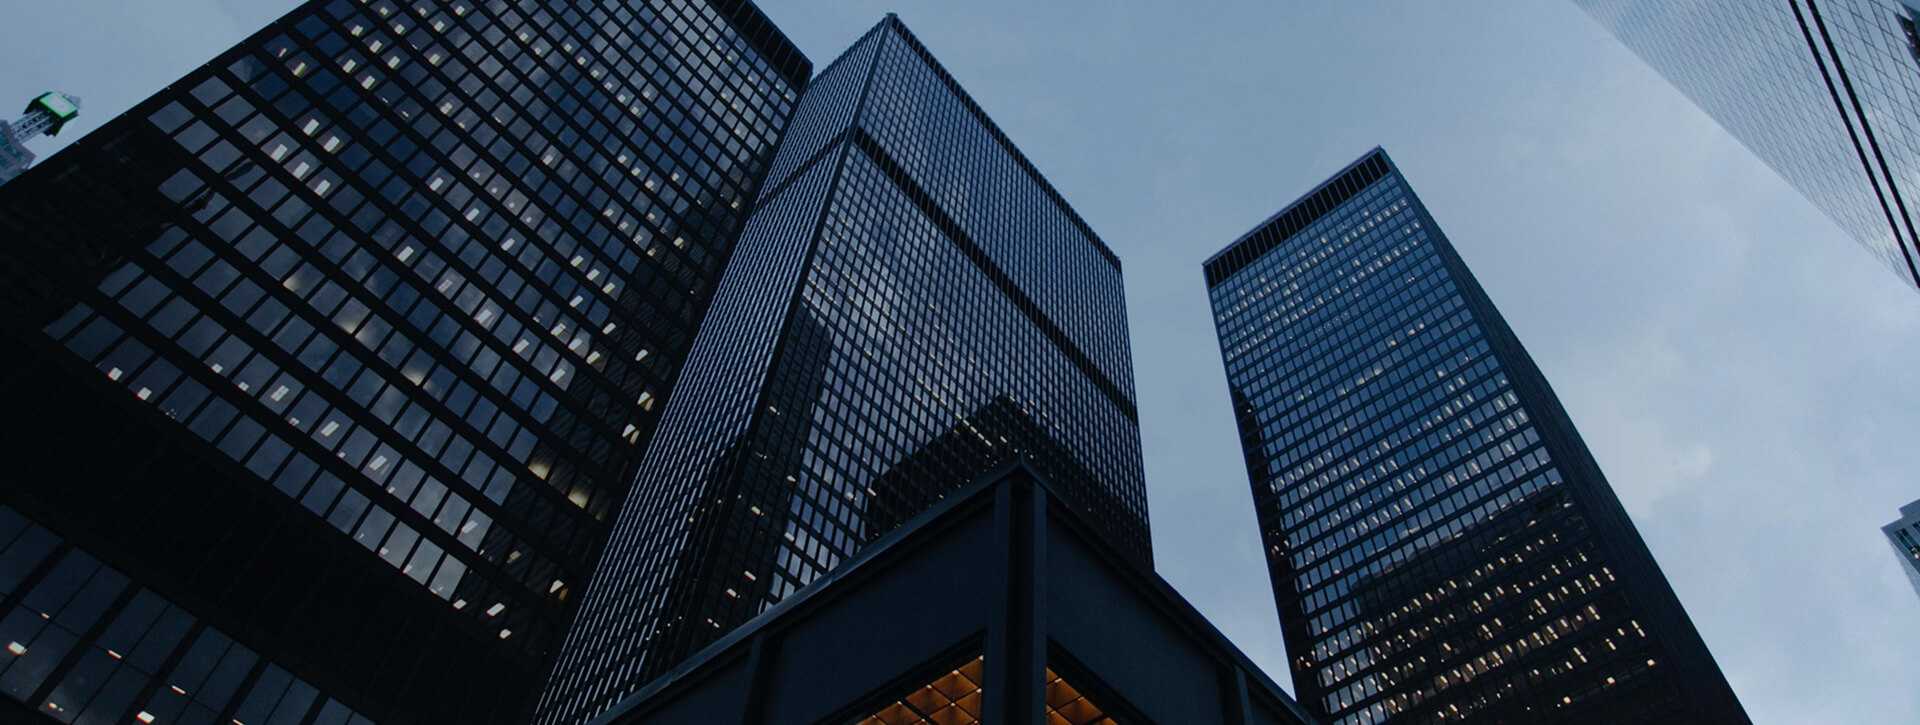 Skyscraper office blocks viewed from below.